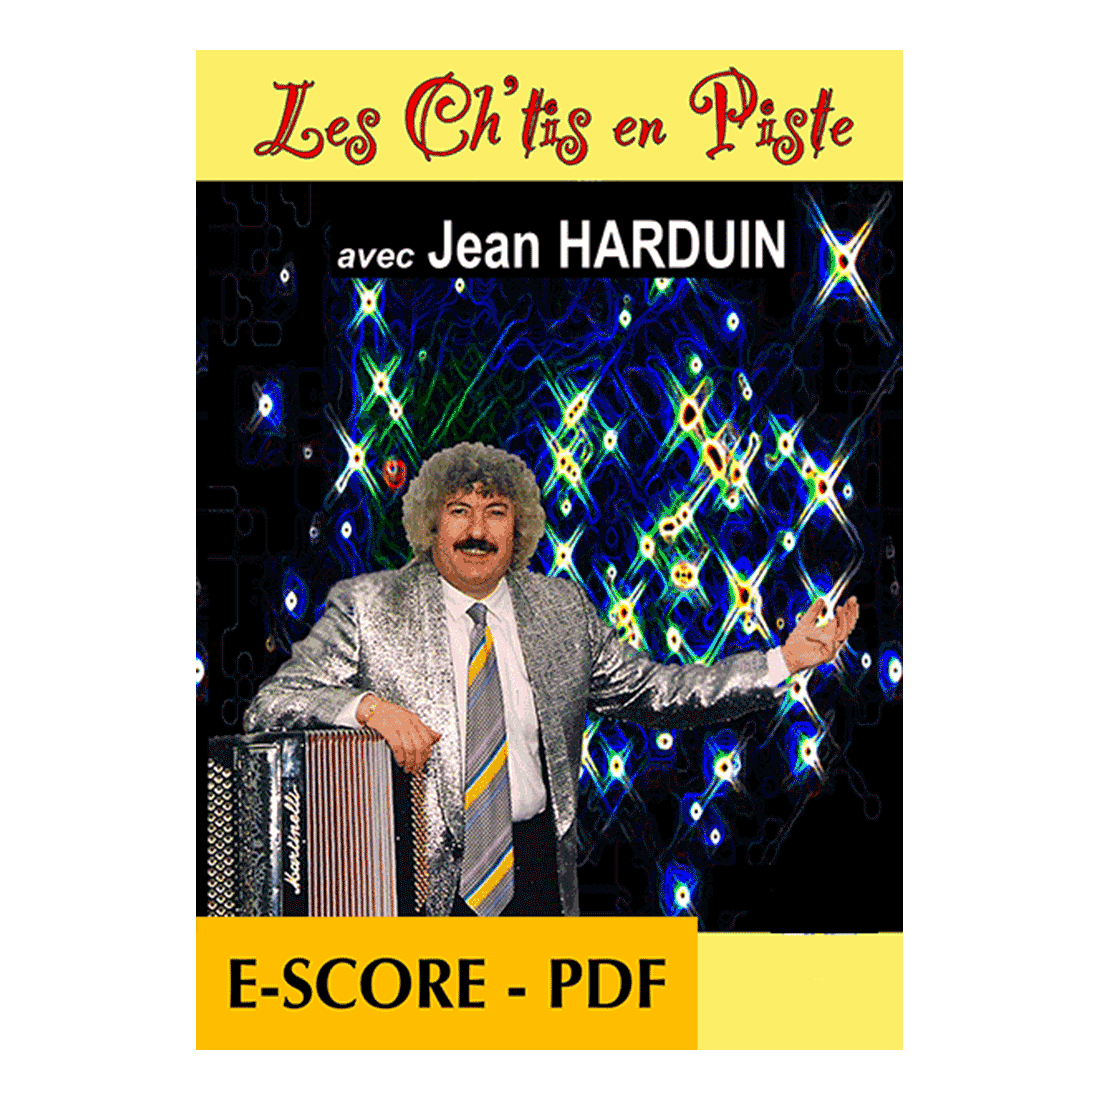 Les Ch'tis en piste avec Jean Harduin pour accordéon - E-score PDF